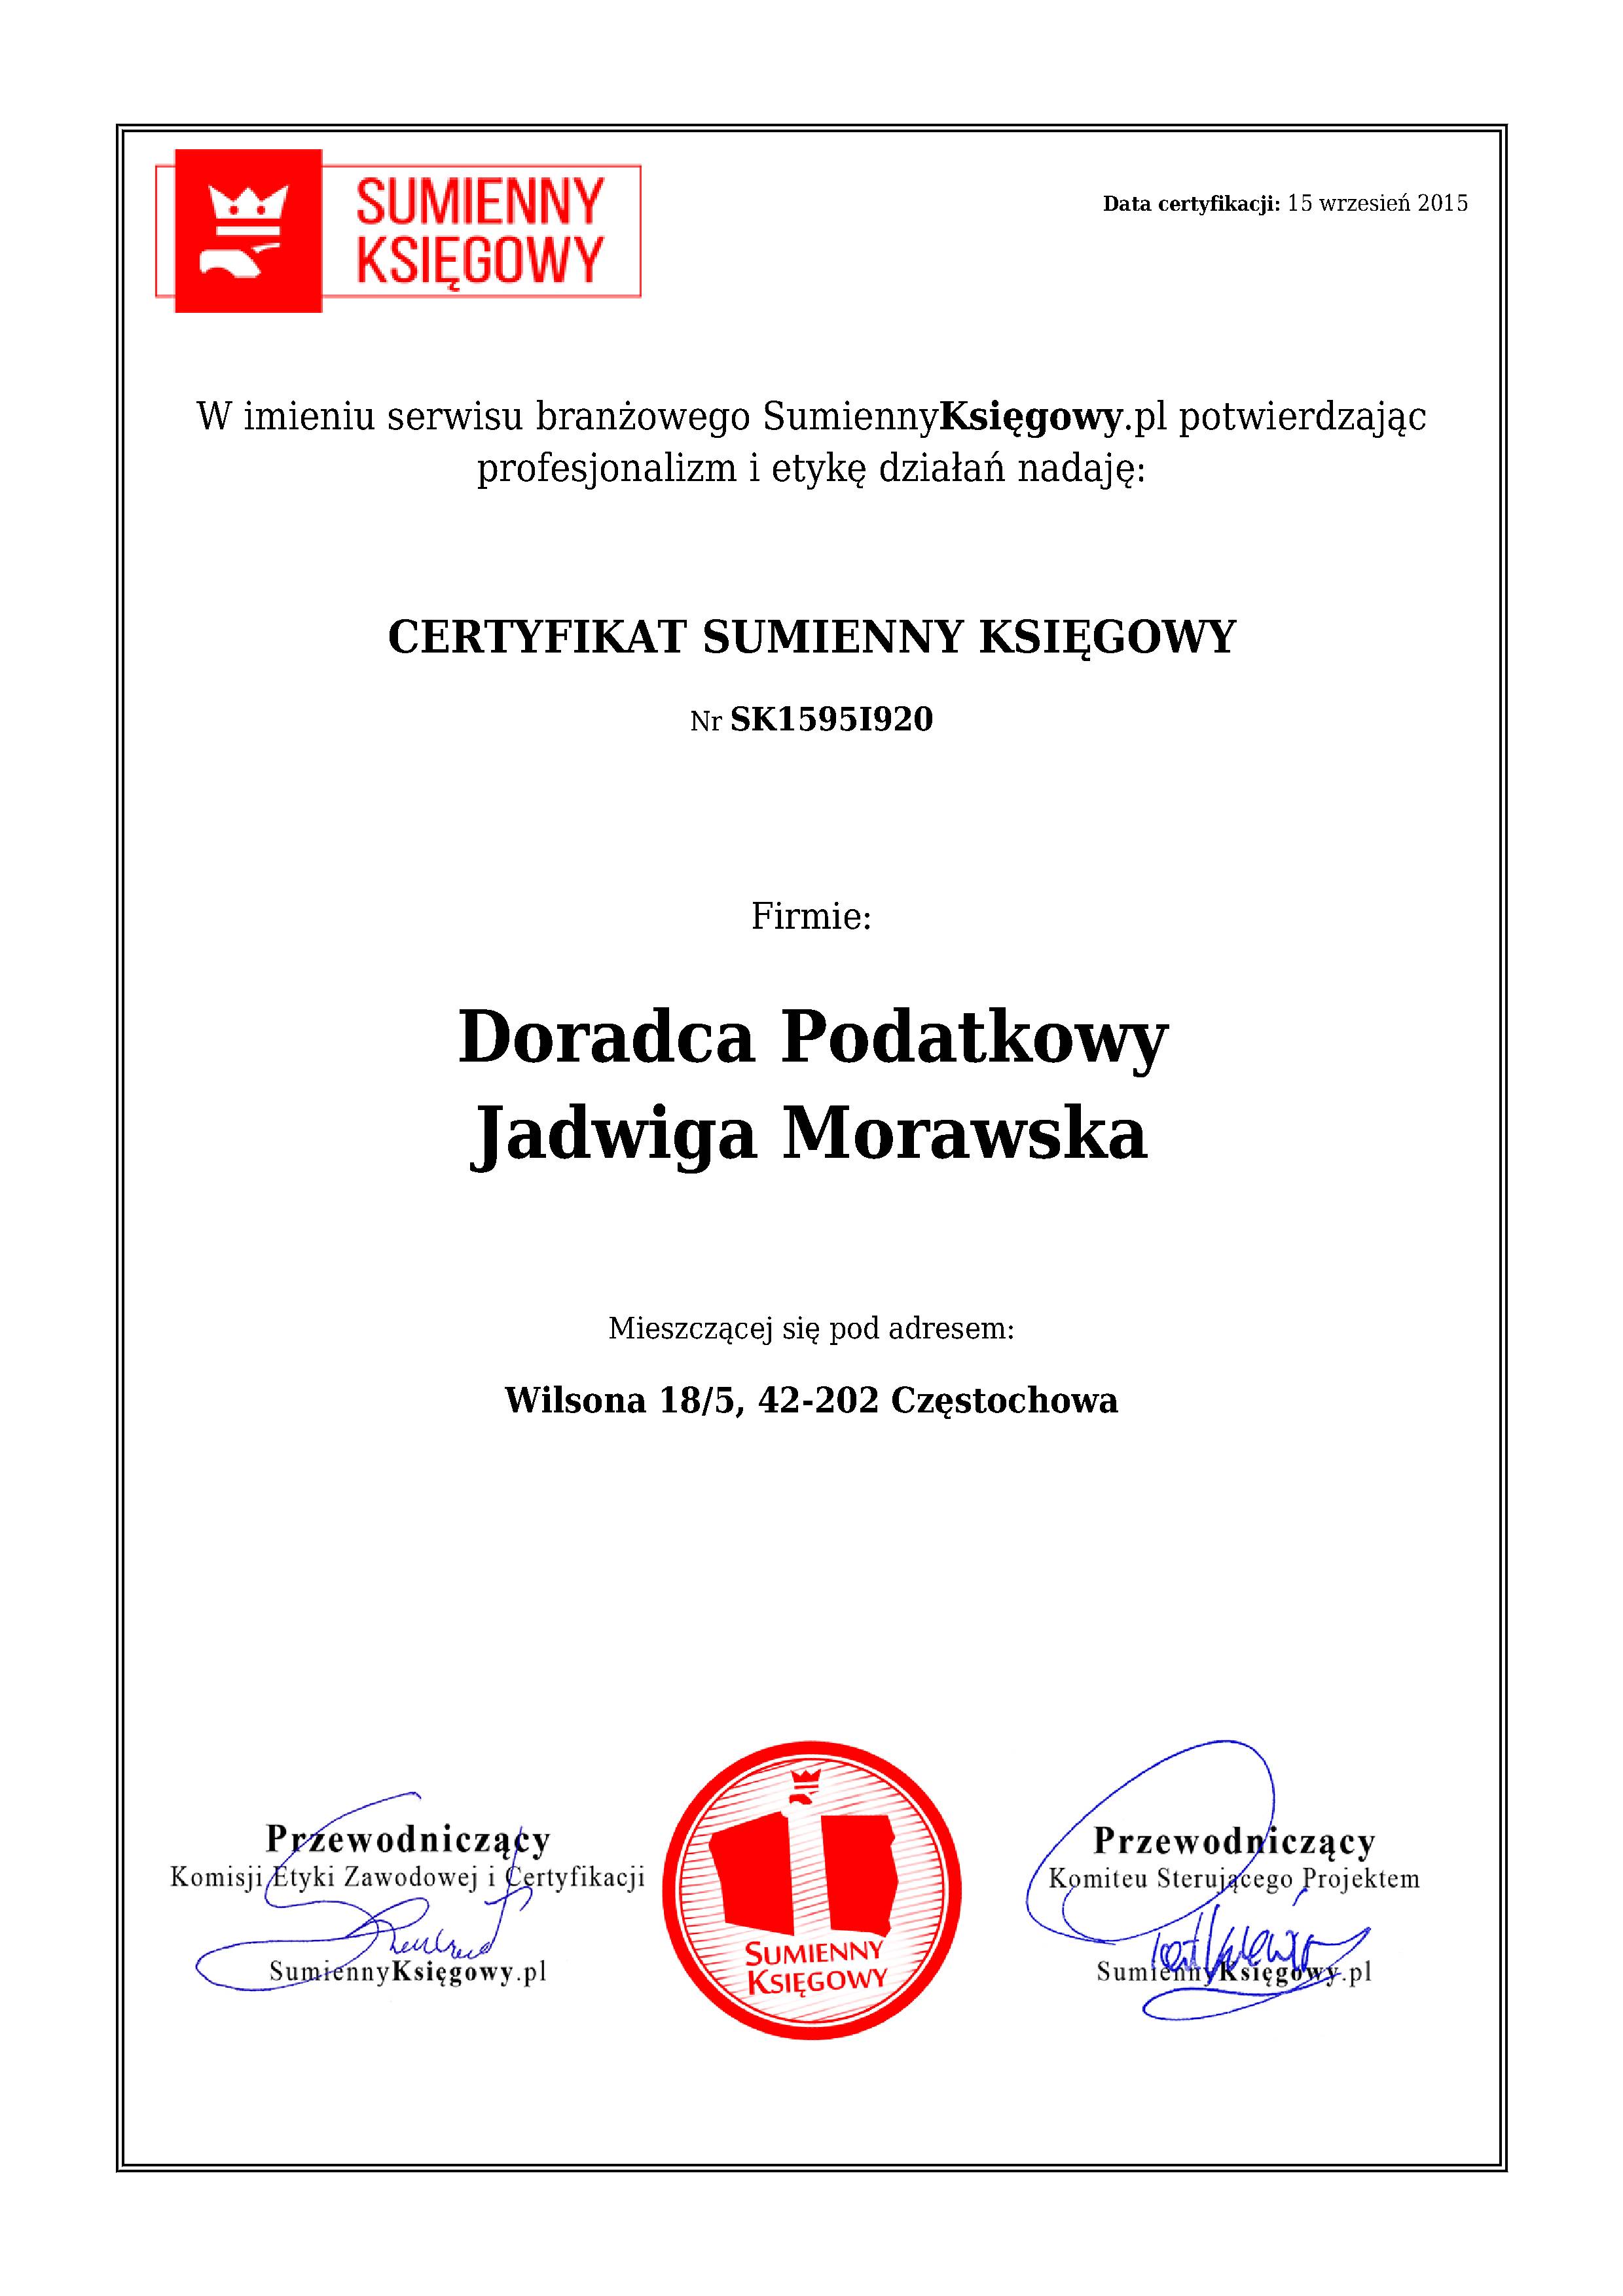 Doradca Podatkowy Jadwiga Morawska  certyfikat 1